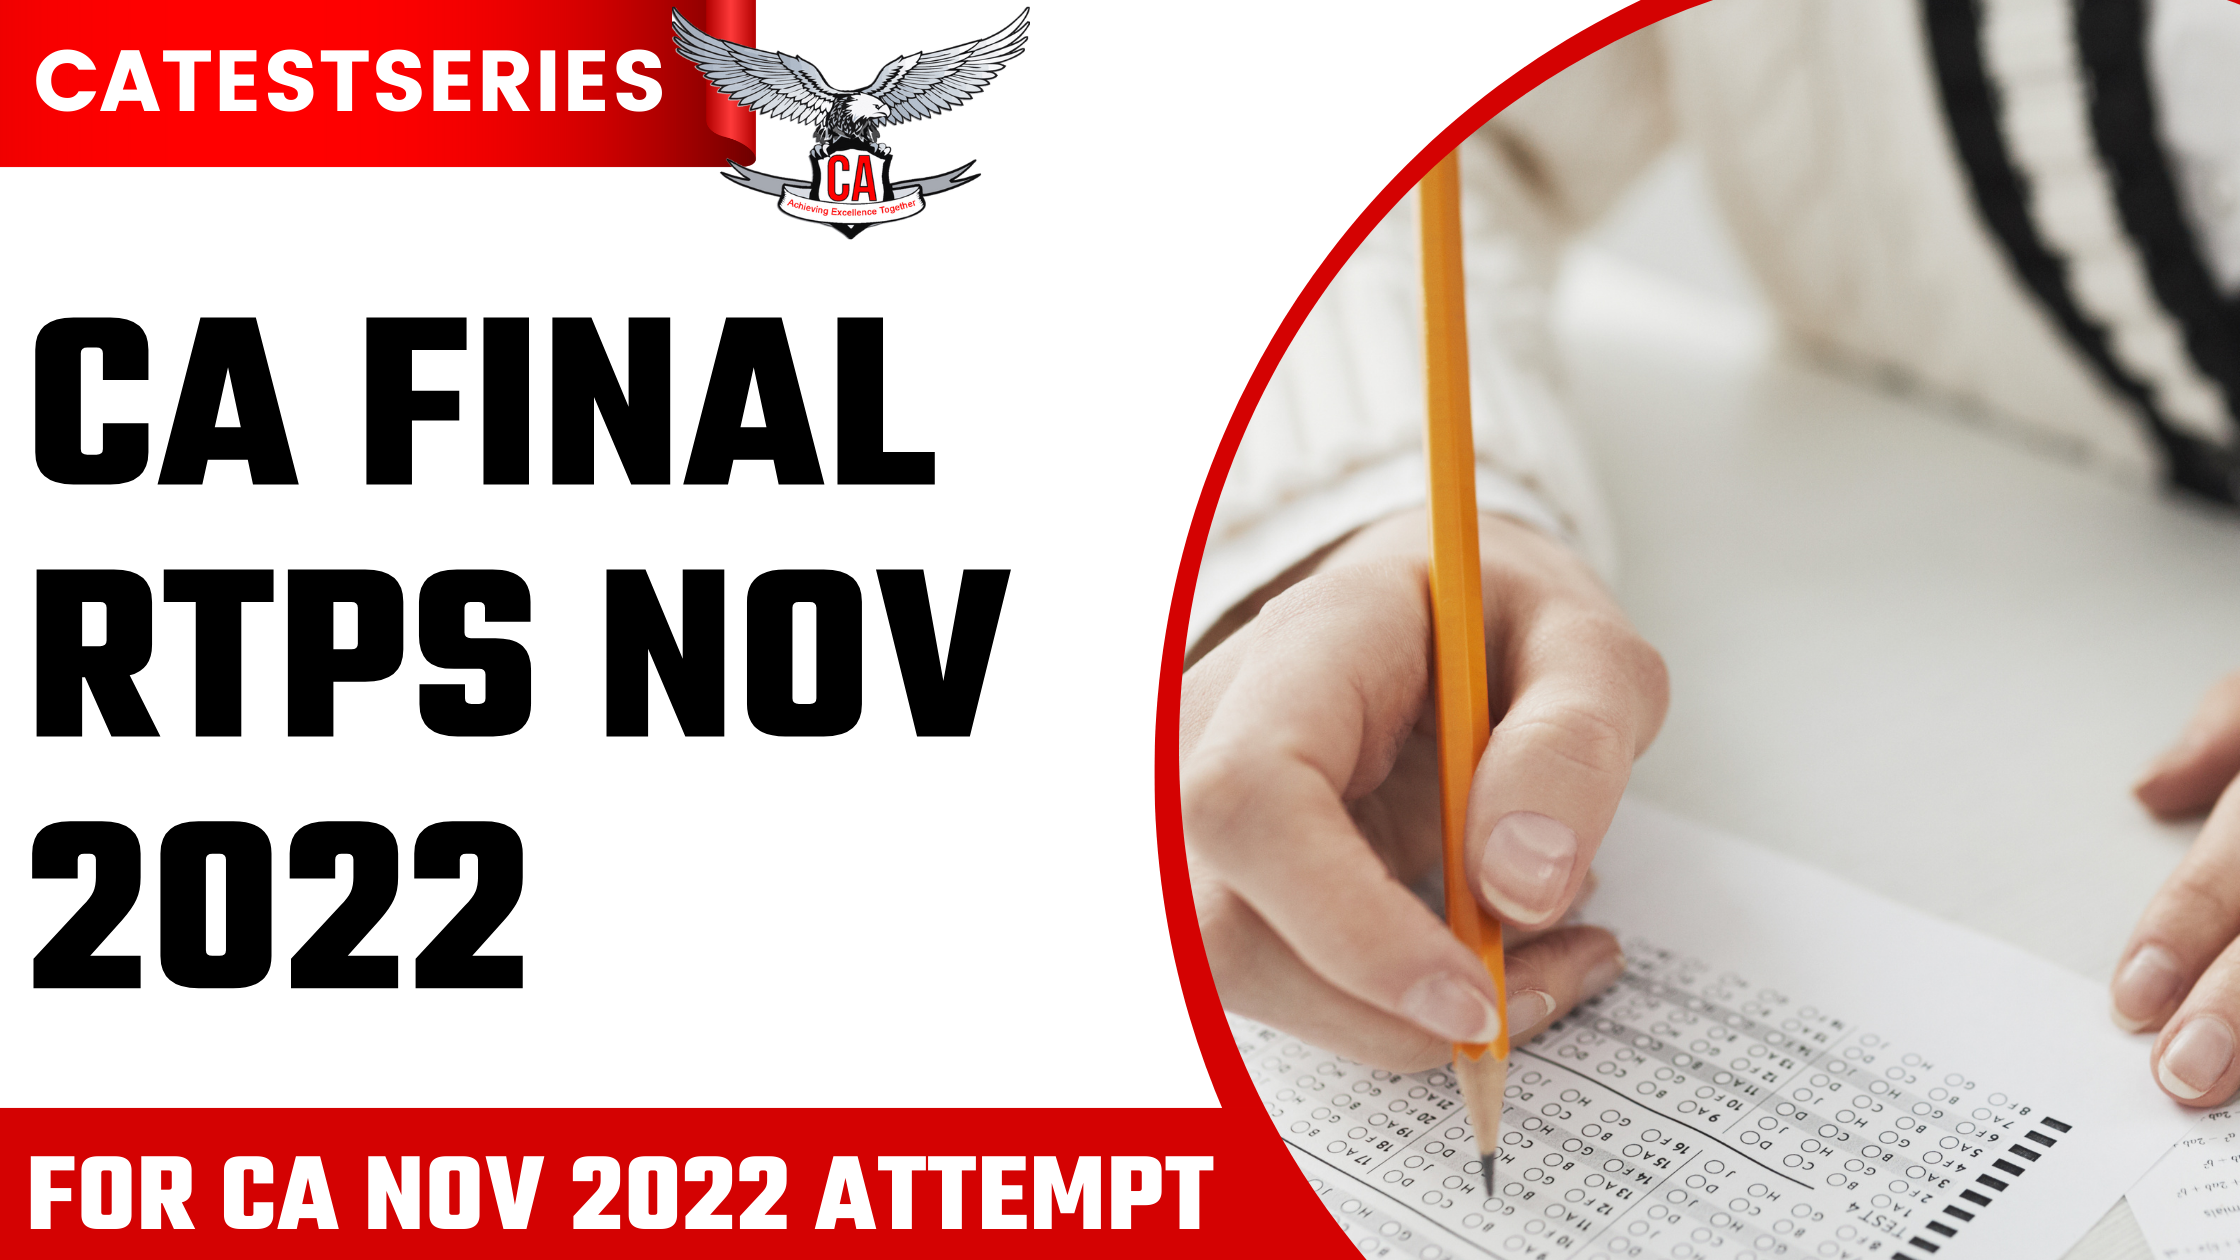 Download CA Final ICAI CA Exams RTPs Nov 2022